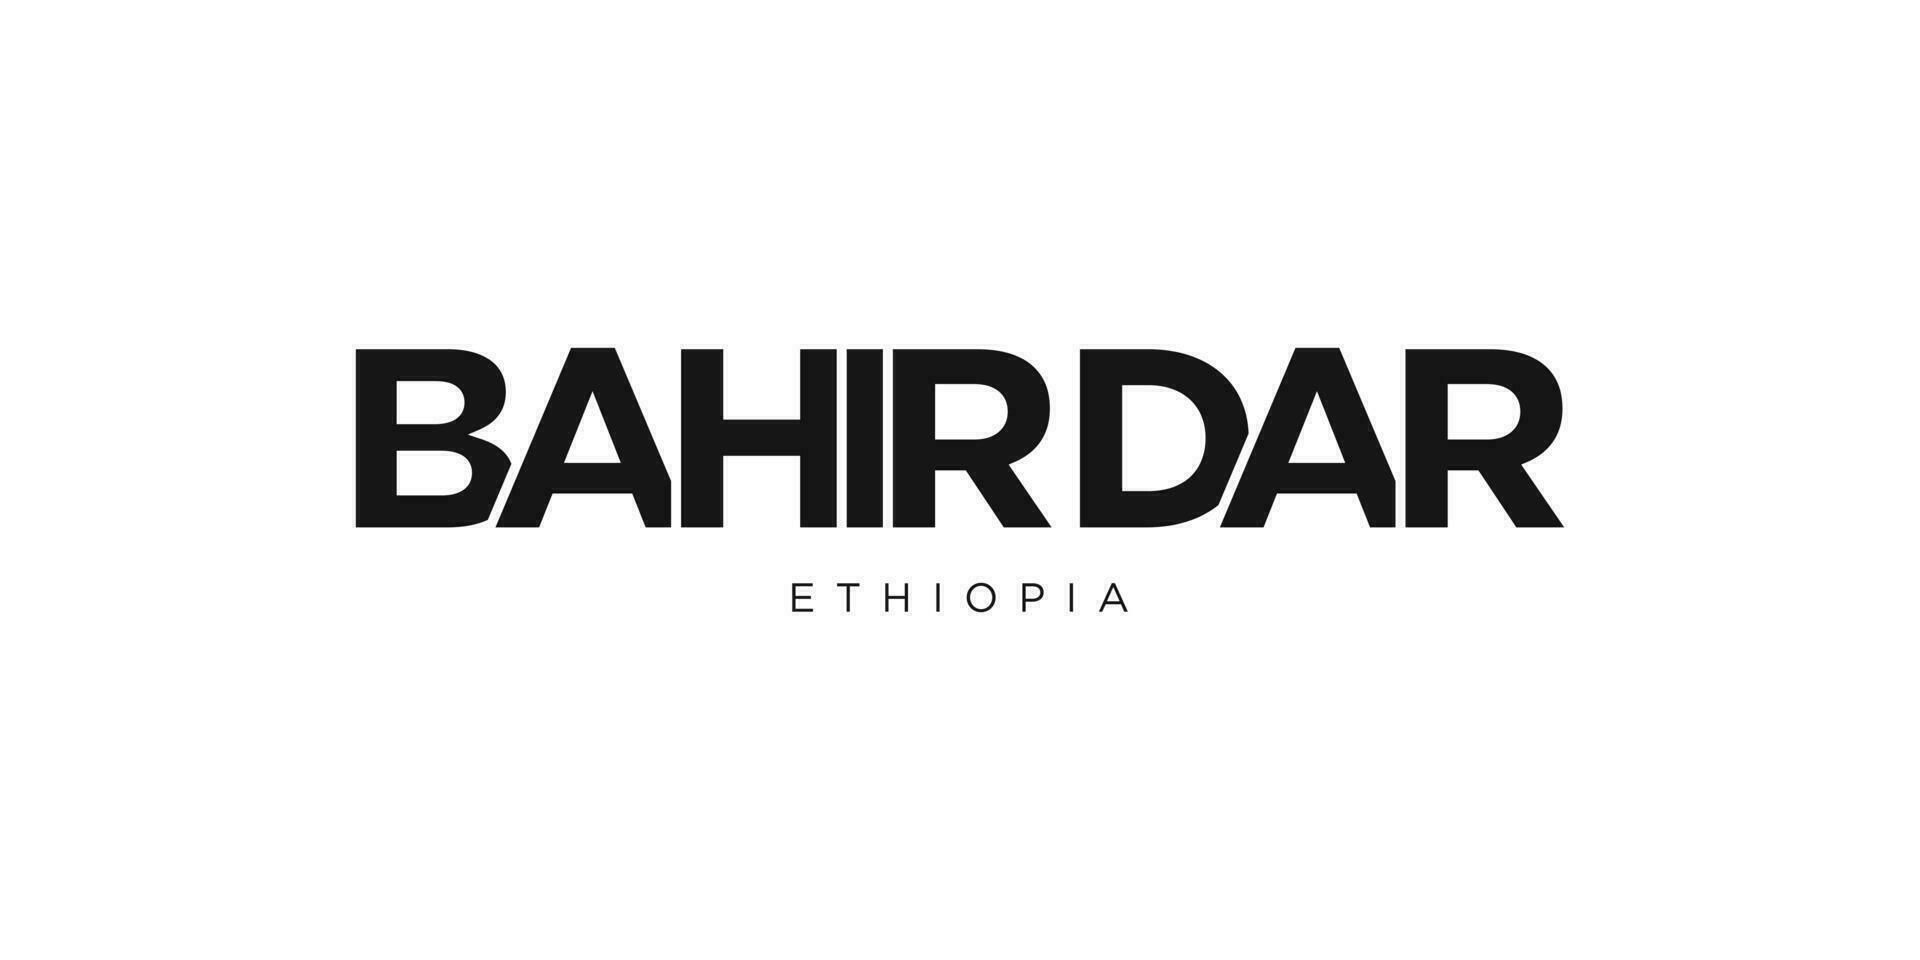 bahir Dar dans le Ethiopie emblème. le conception Caractéristiques une géométrique style, vecteur illustration avec audacieux typographie dans une moderne Police de caractère. le graphique slogan caractères.